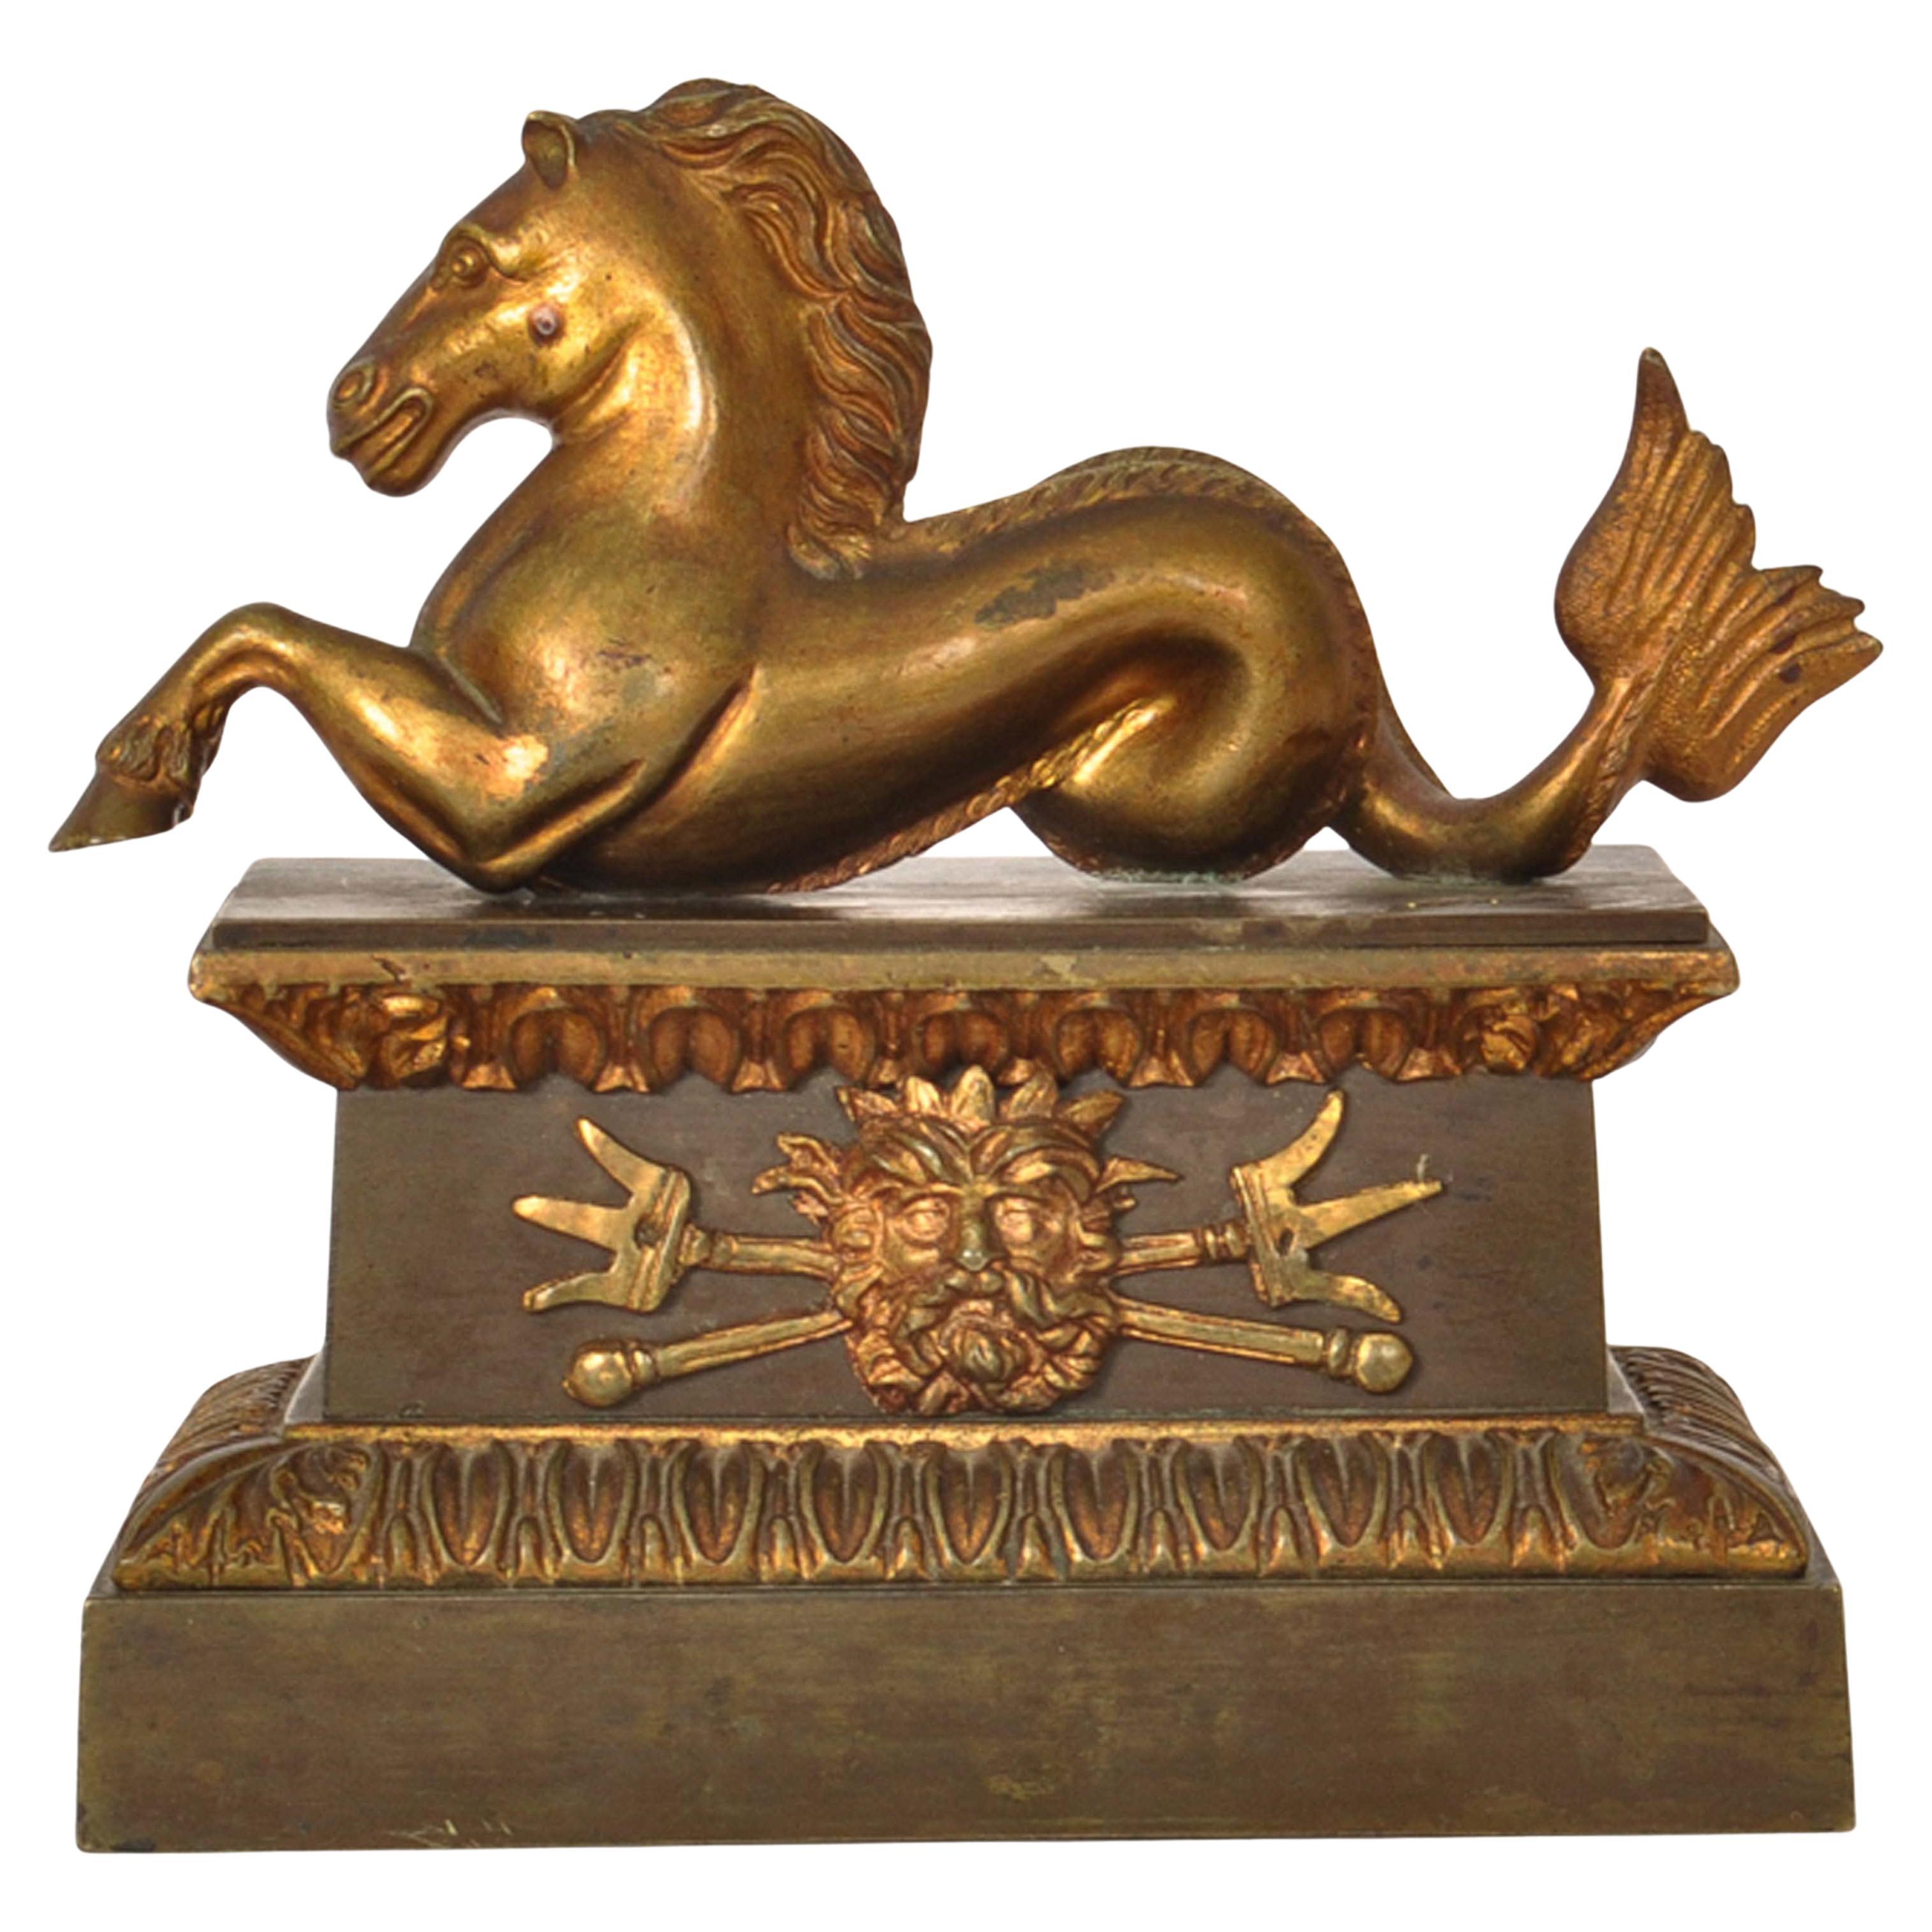 Un bel ornement de bureau ancien en bronze coulé du Grand Tour, hippocampe, statue d'hippocampe, vers 1820.
Ce magnifique bronze est coulé selon la méthode de la cire perdue. Il représente un Hippocampe de la mythologie romaine (et grecque), une